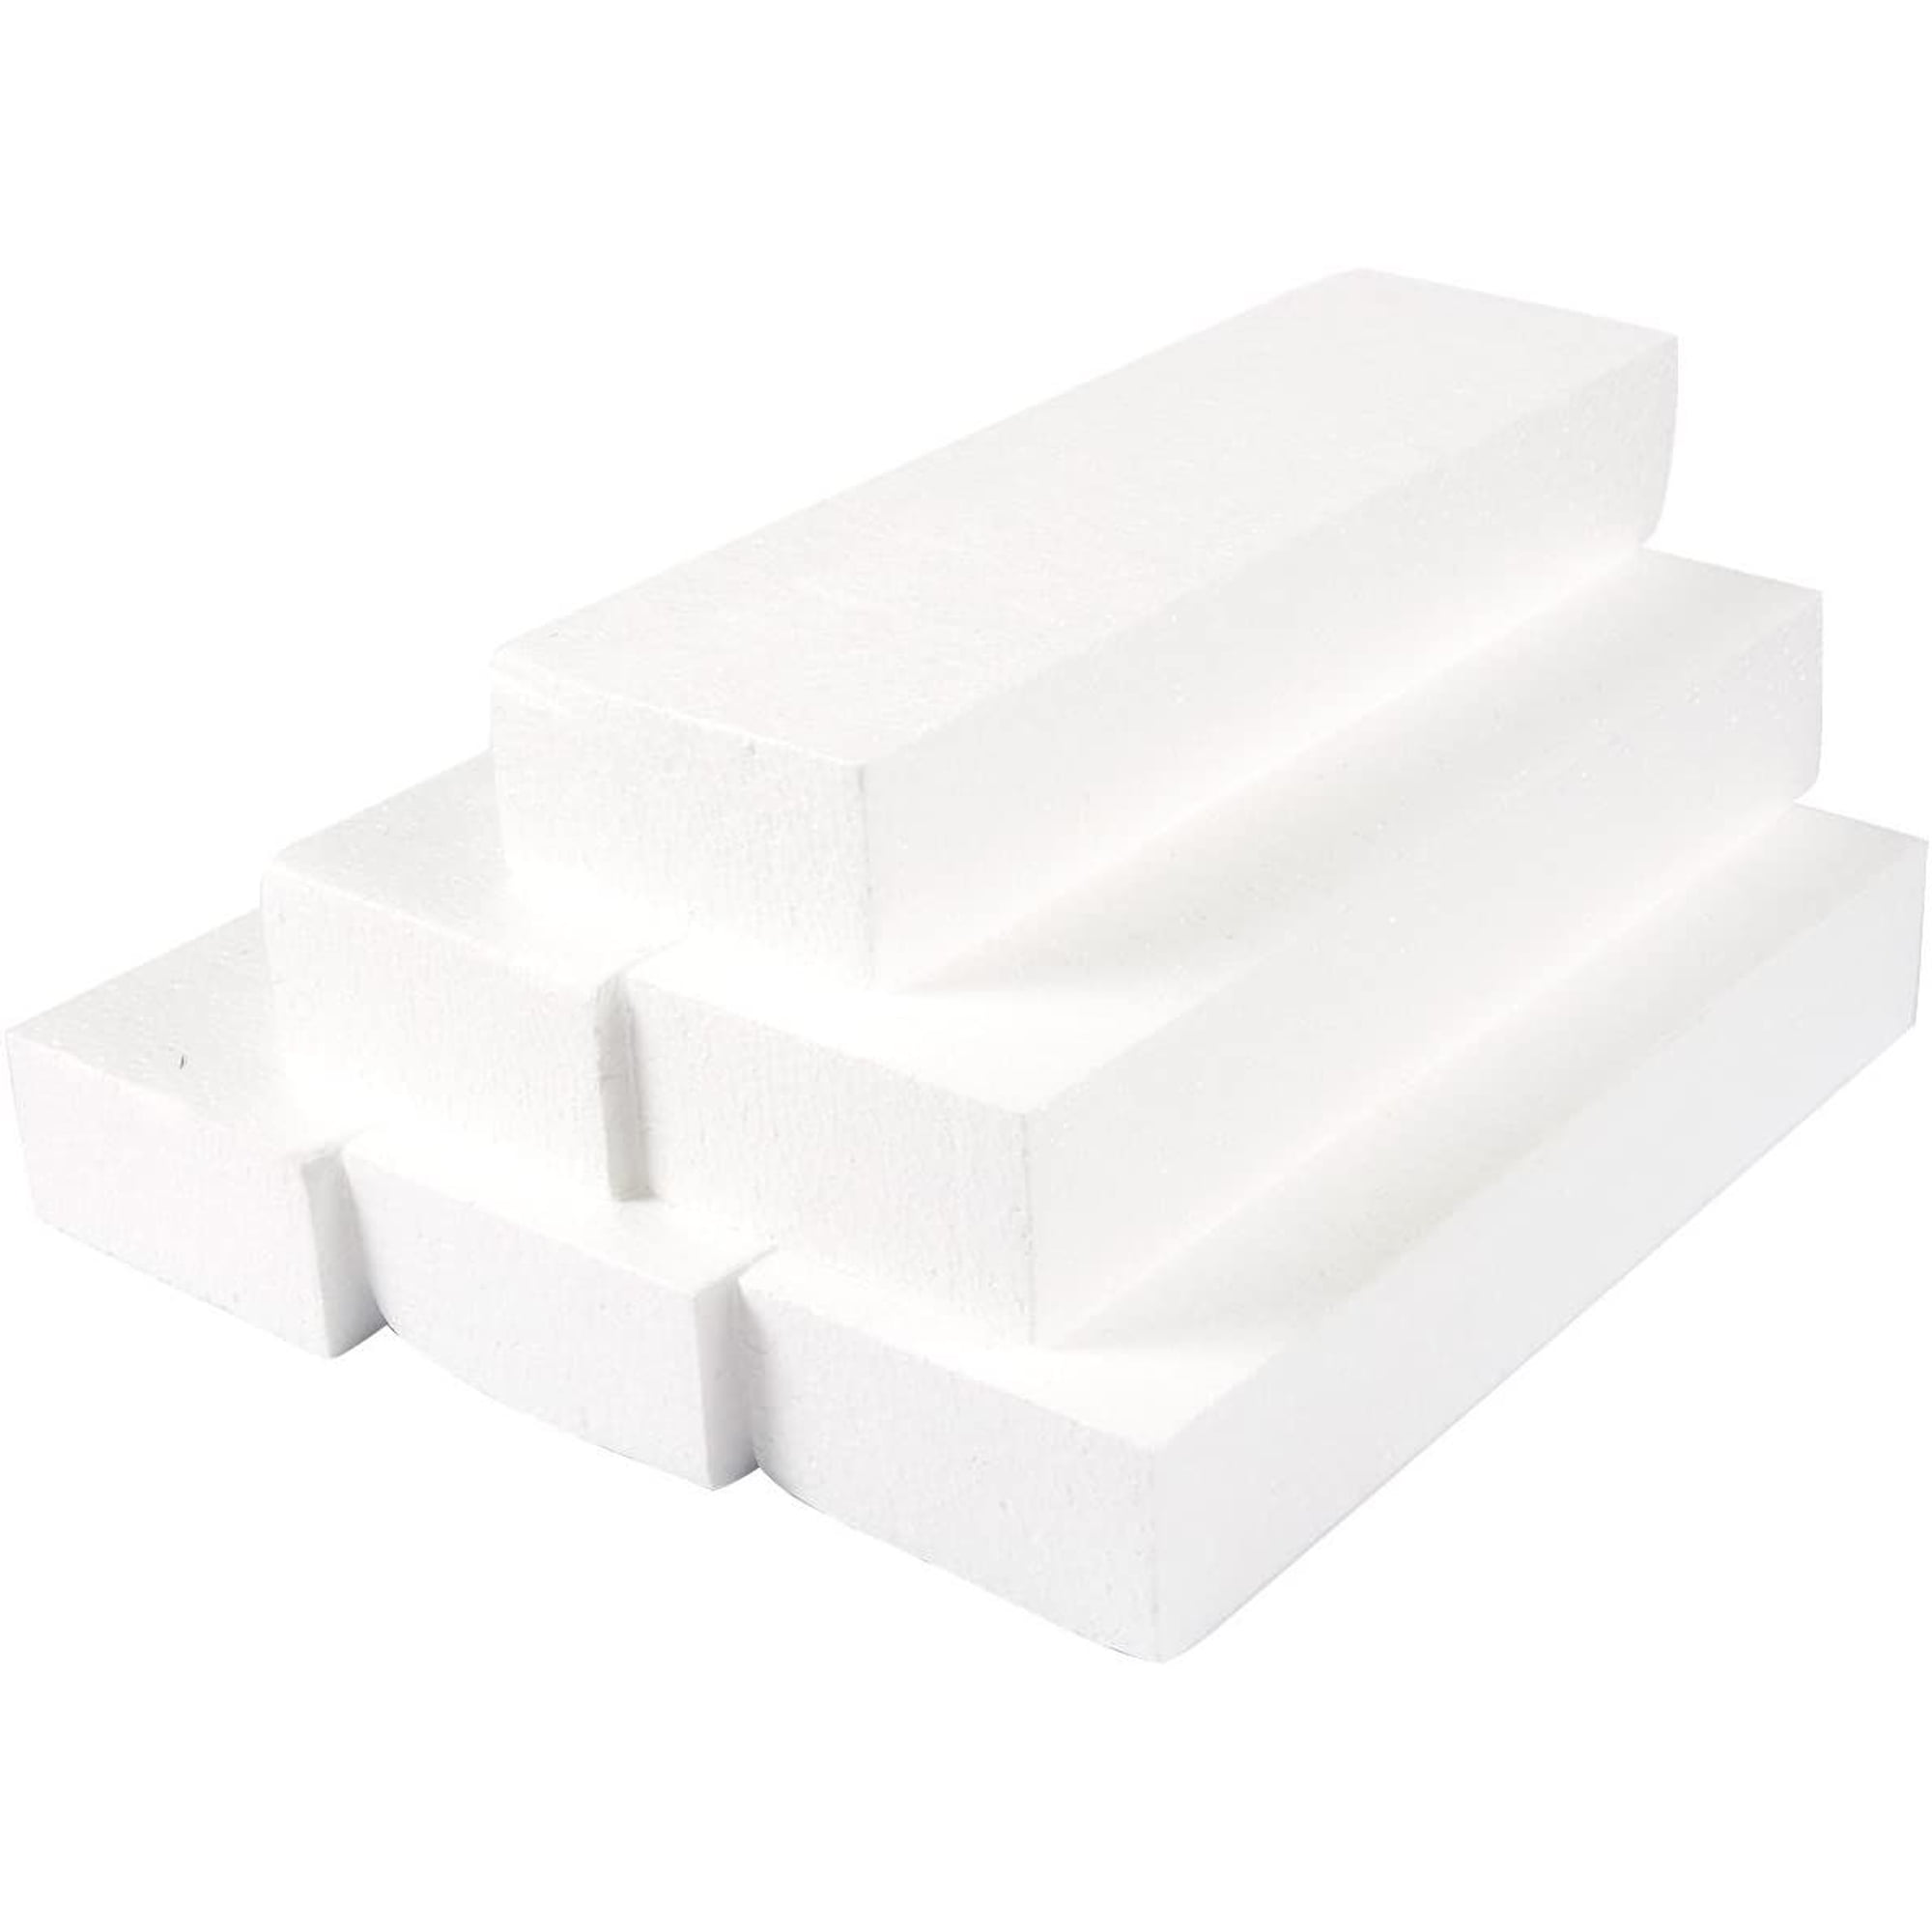 White Foam disks, 2-Ct. Packs